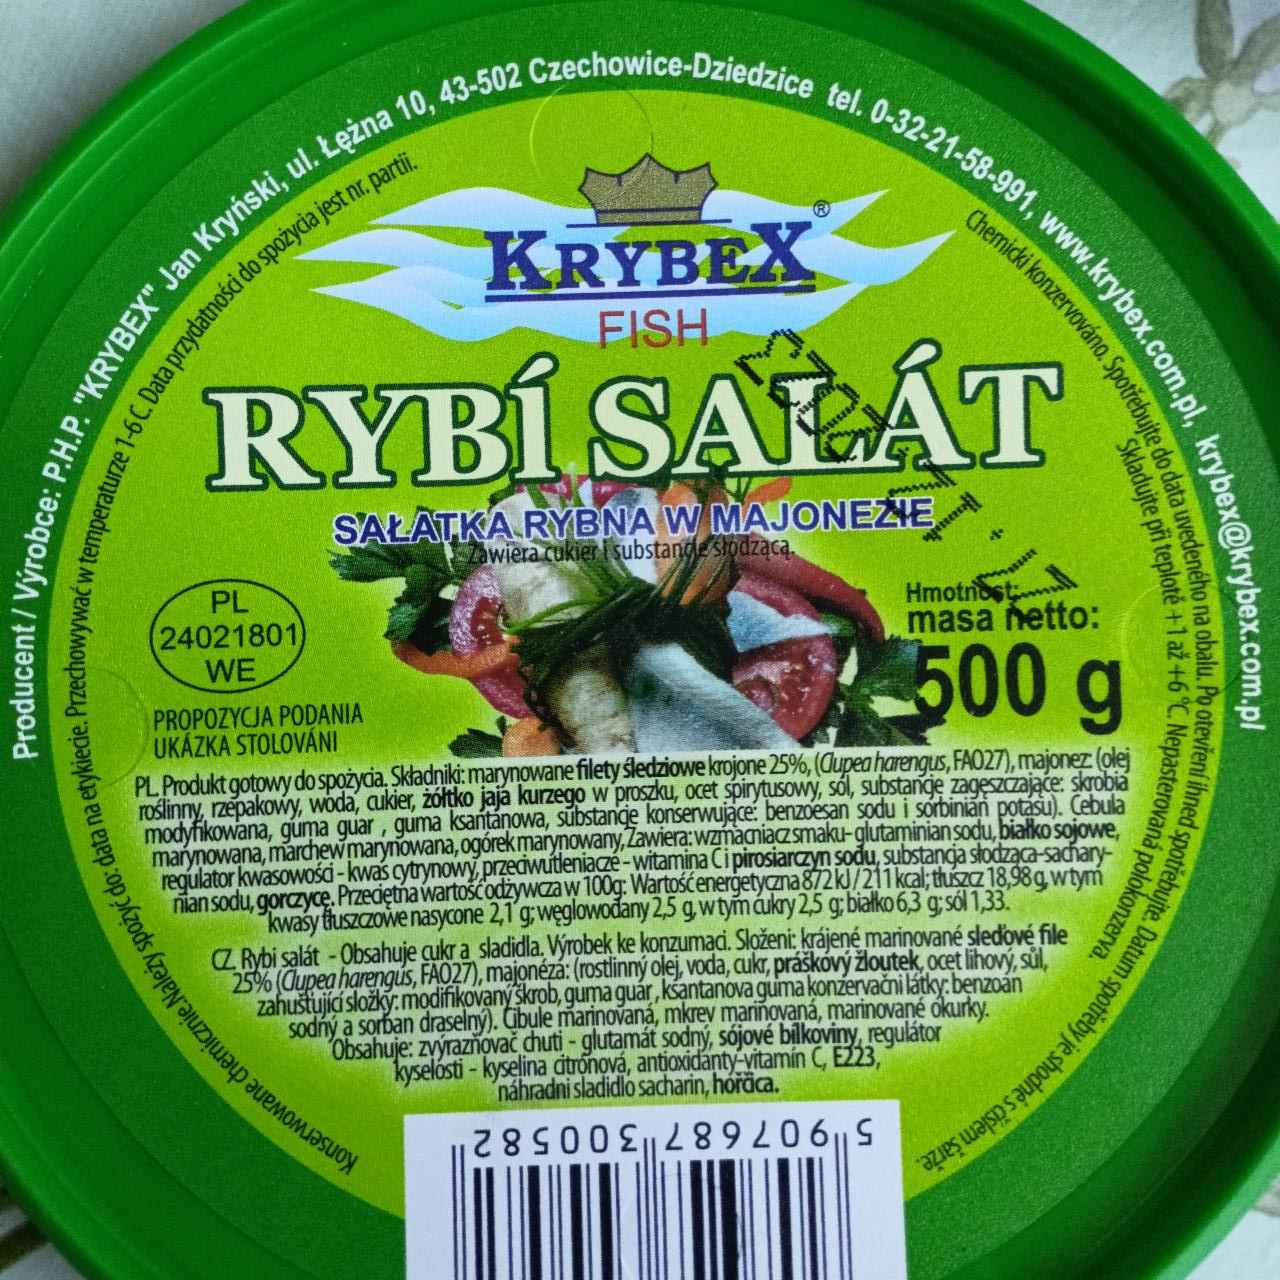 Zdjęcia - Rybi salat Krybex